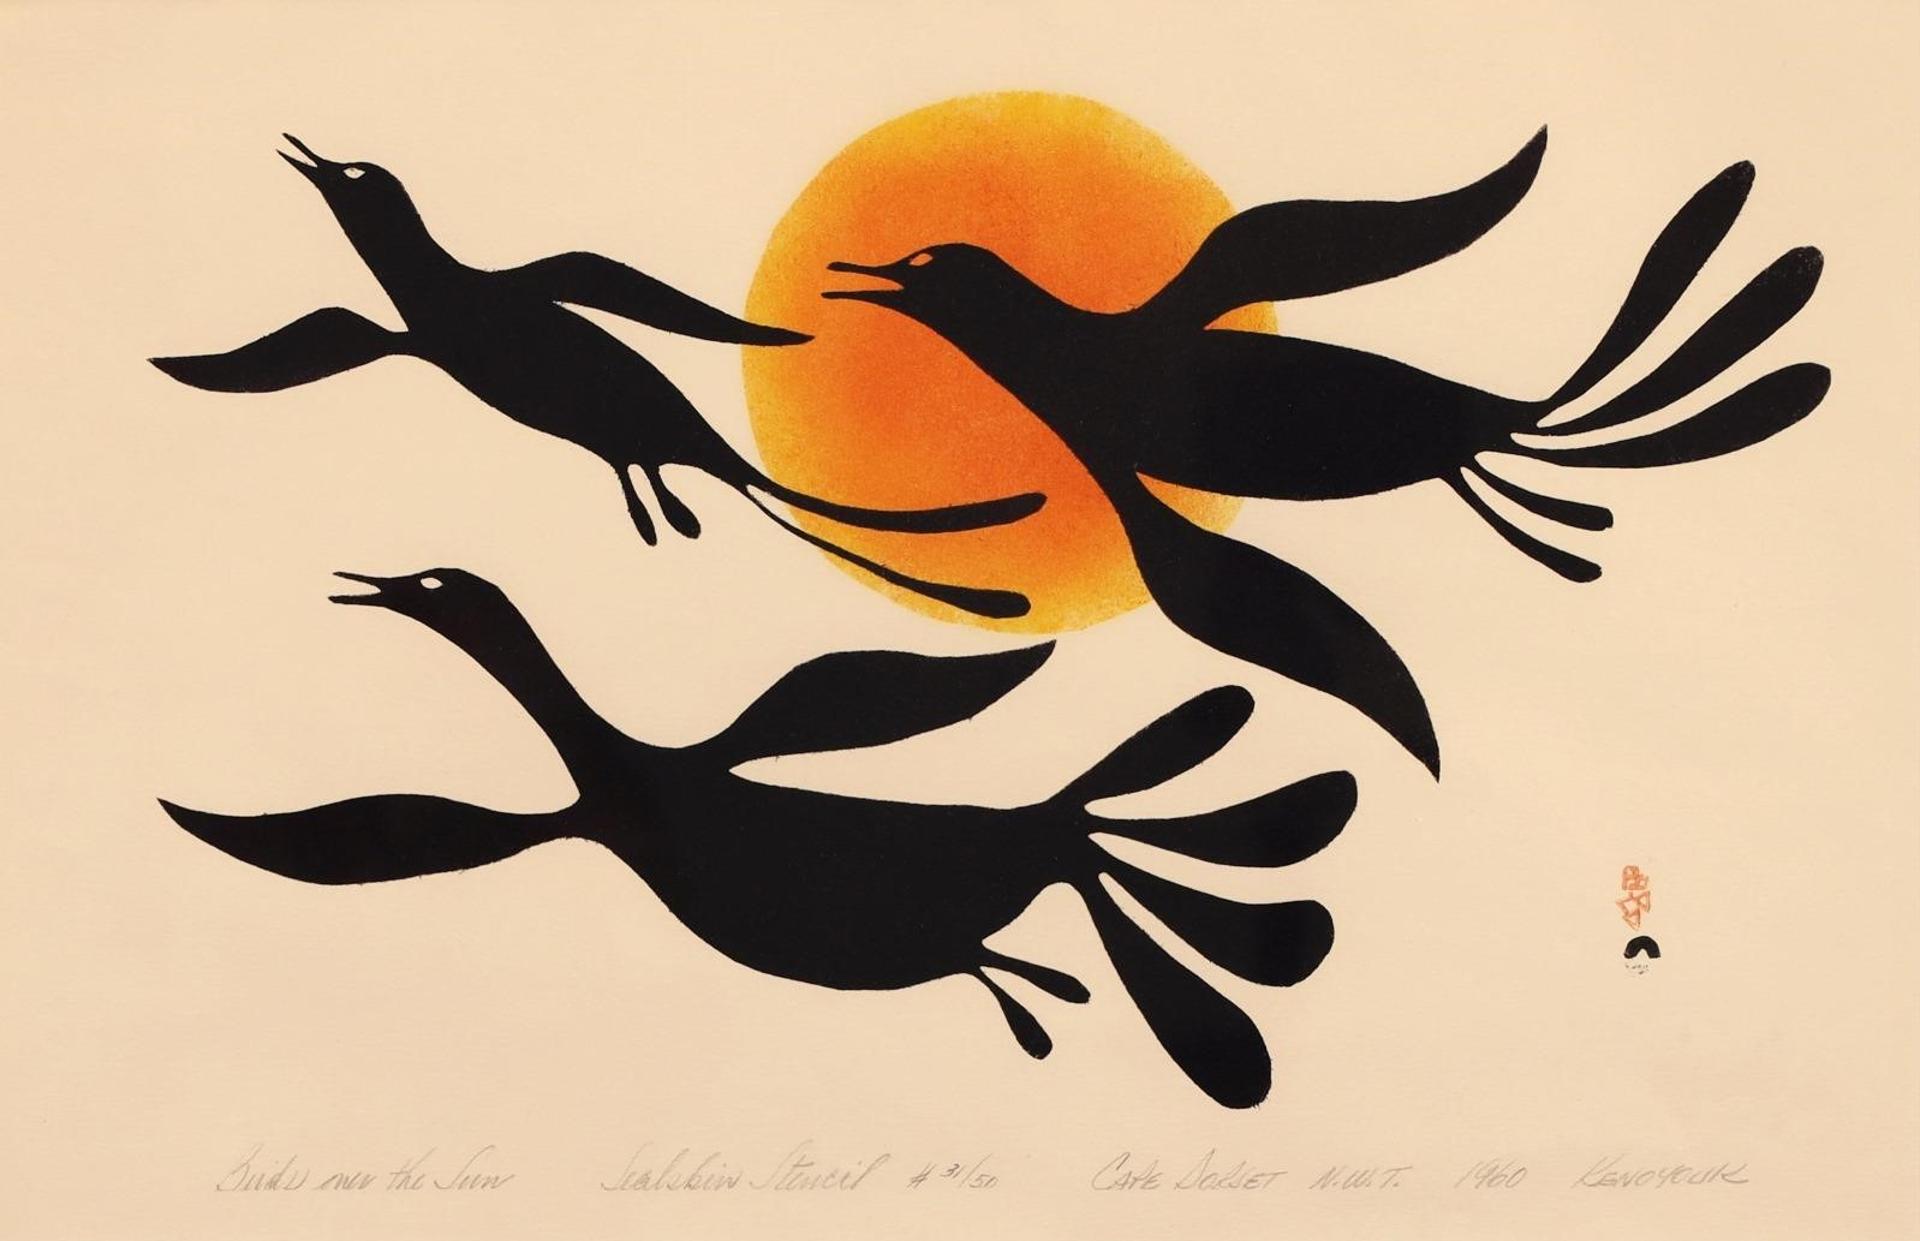 Kenojuak Ashevak (1927-2013) - Birds Over The Sun; 1960